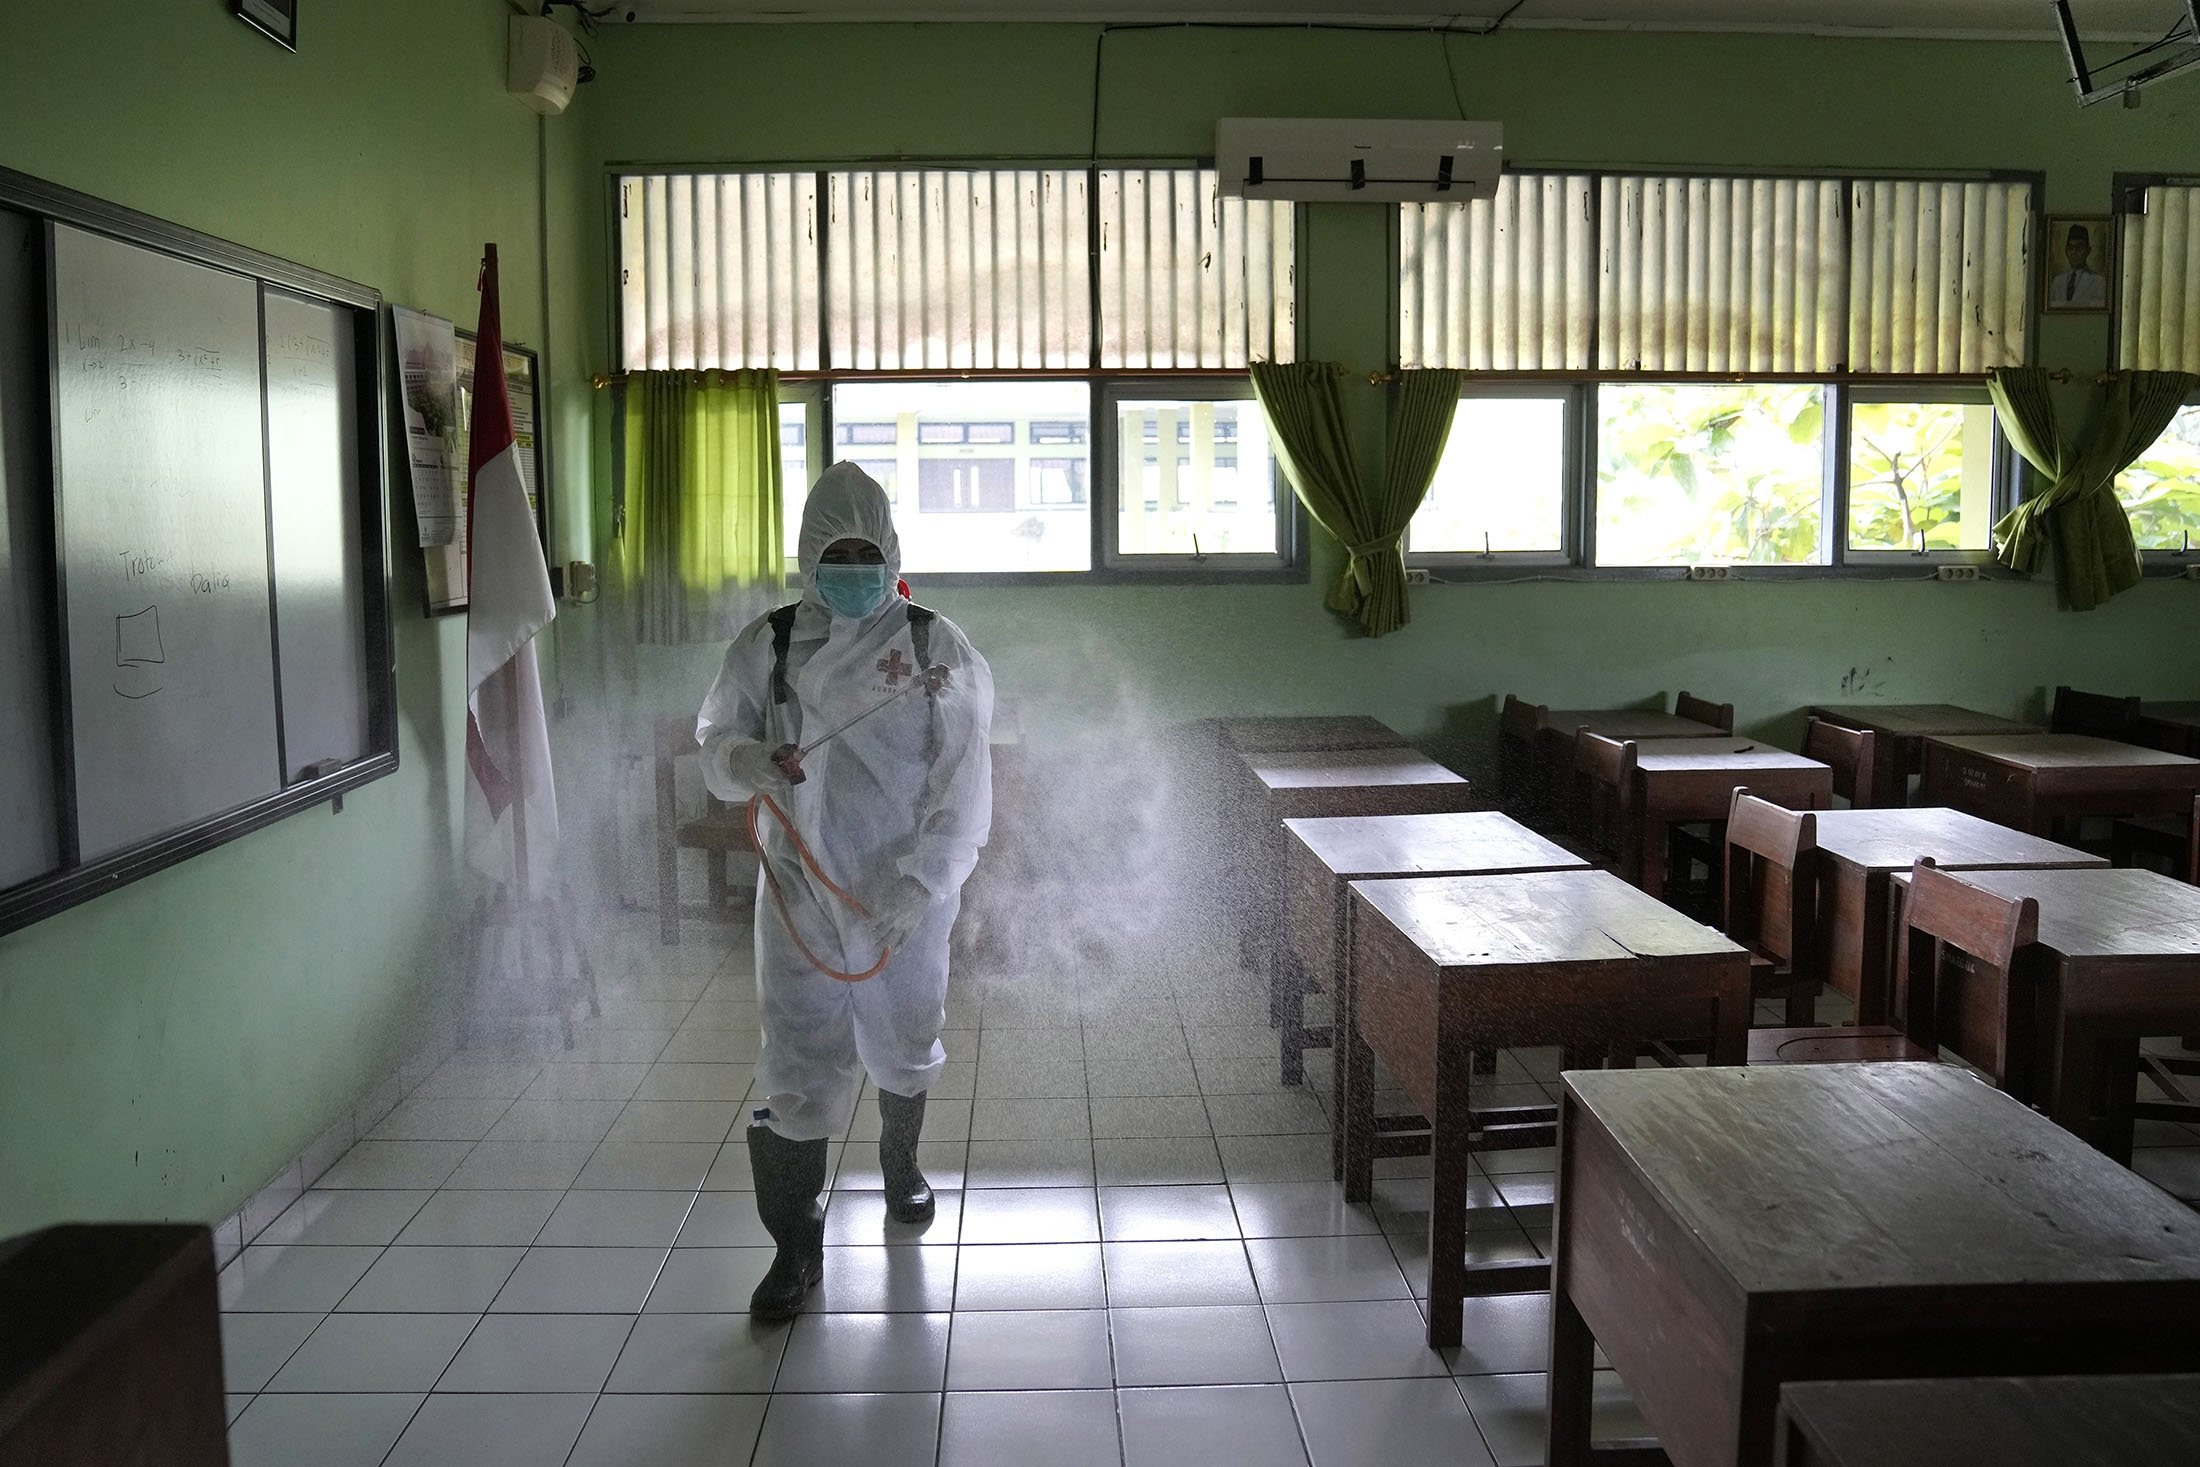 Seorang pekerja Palang Merah menyemprotkan disinfektan di dalam ruang kelas yang kosong setelah kasus COVID-19 ditemukan di sekolah di Jakarta, Indonesia, 28 Januari 2022. (AP Photo)